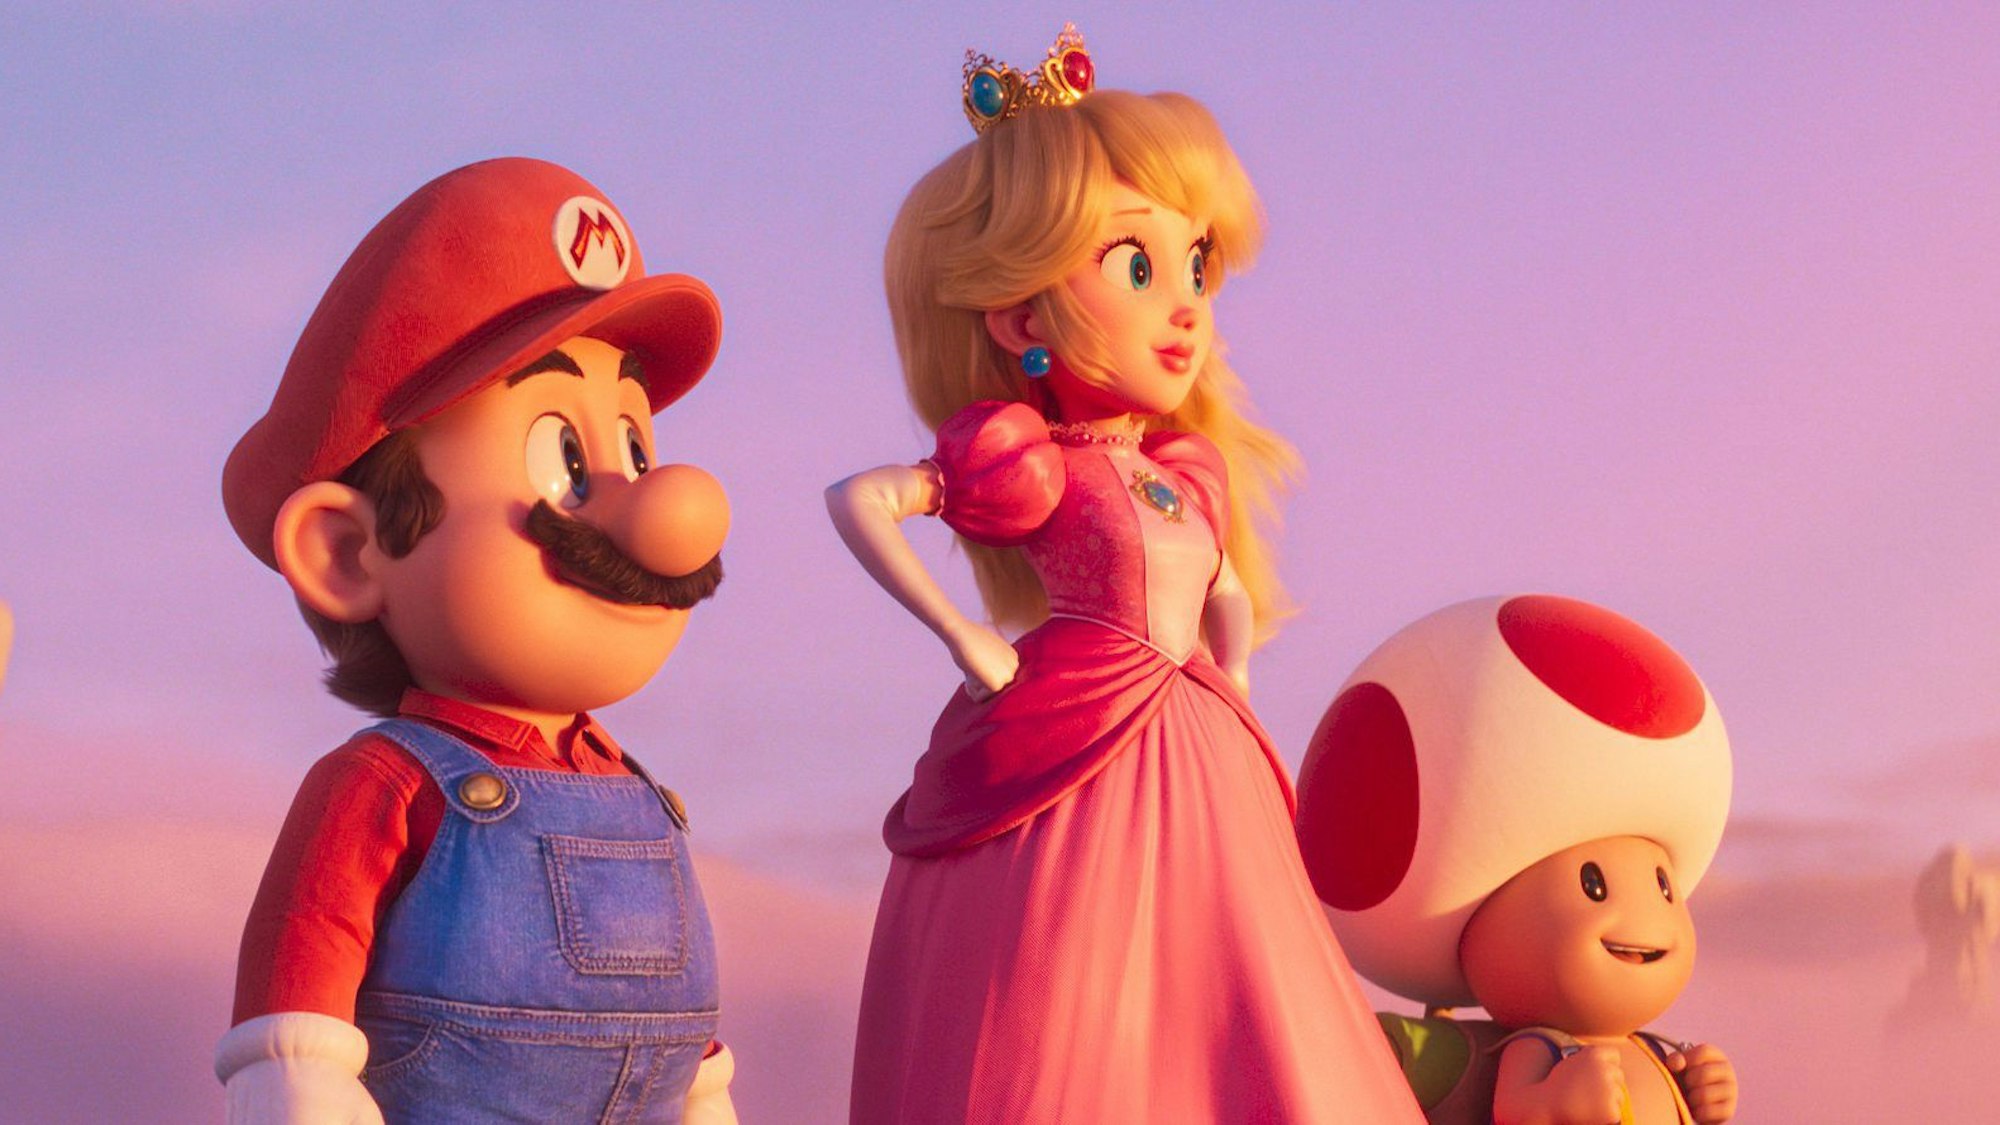 Mario, Peach und Toad stehen nebeneinander und blicken in die Ferne. Im Hintergrund sind rötliche Wolken zu sehen, der Himmel färbt sich mit dem Sonnenuntergang-